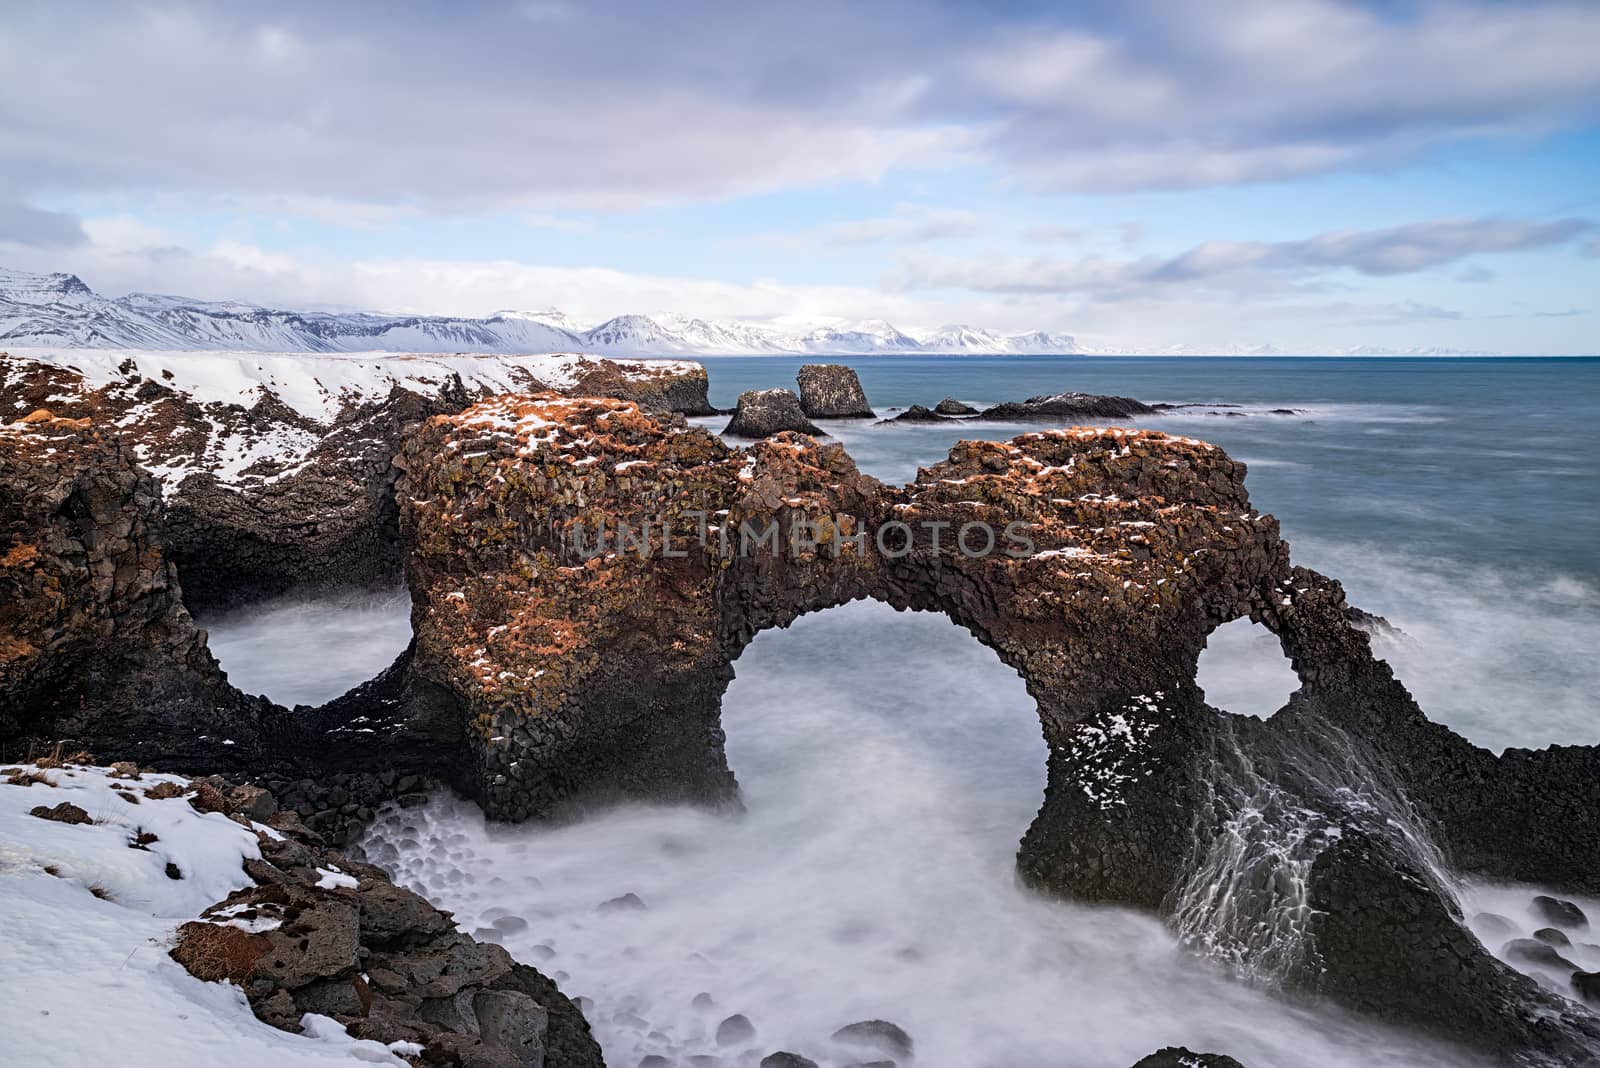 Gatklettur arch in Arnarstapi, Iceland by LuigiMorbidelli